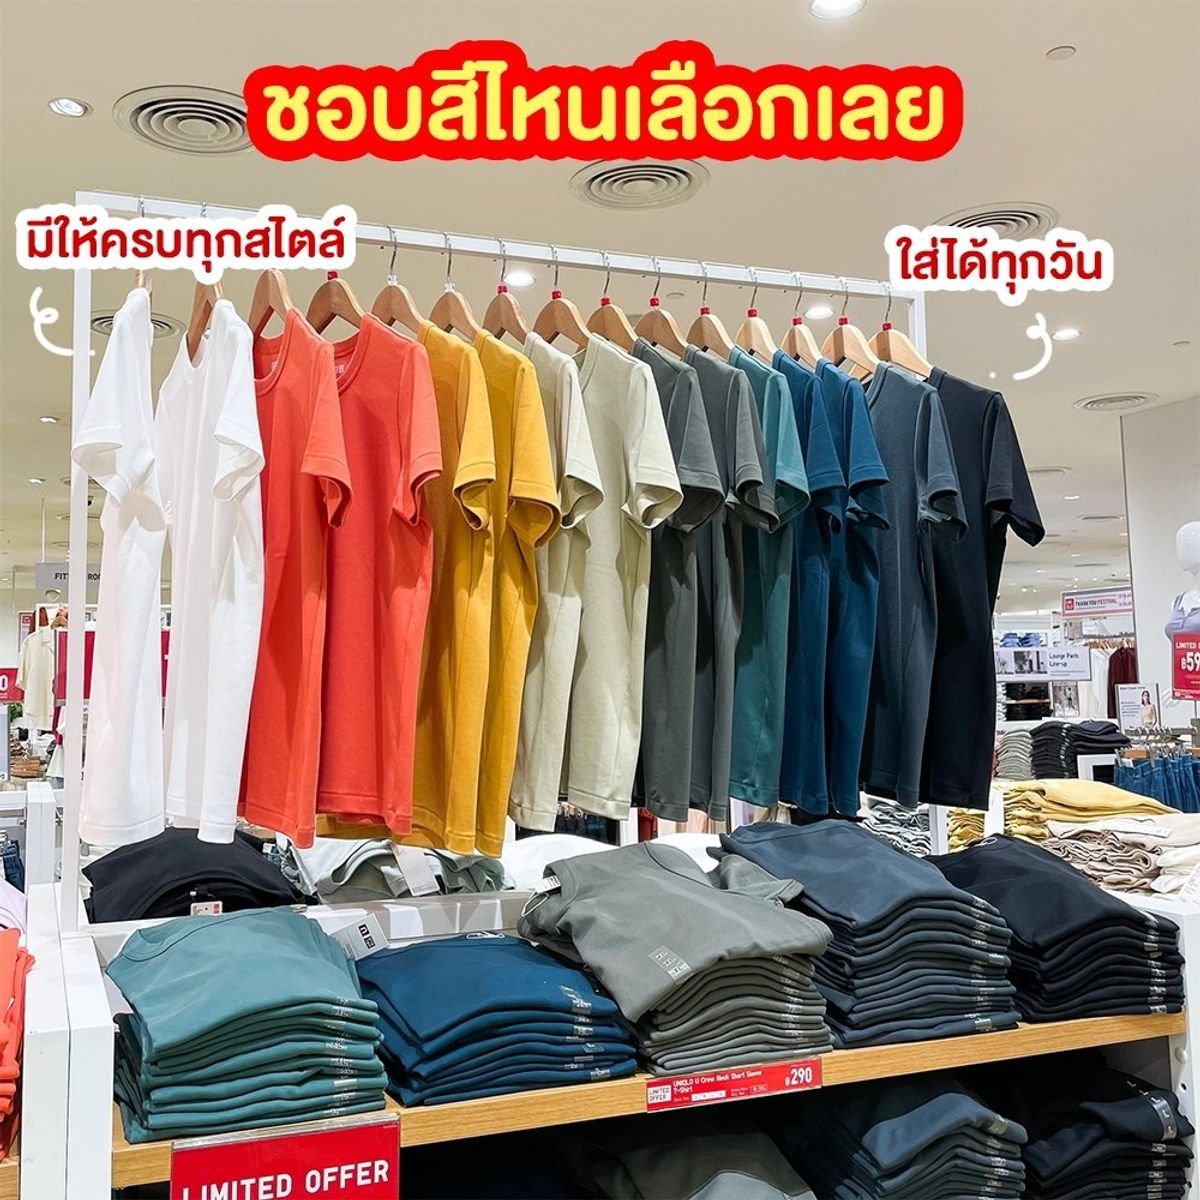 เปดใหบรการแลววนน UNIQLO  The Mall Thailand  Facebook